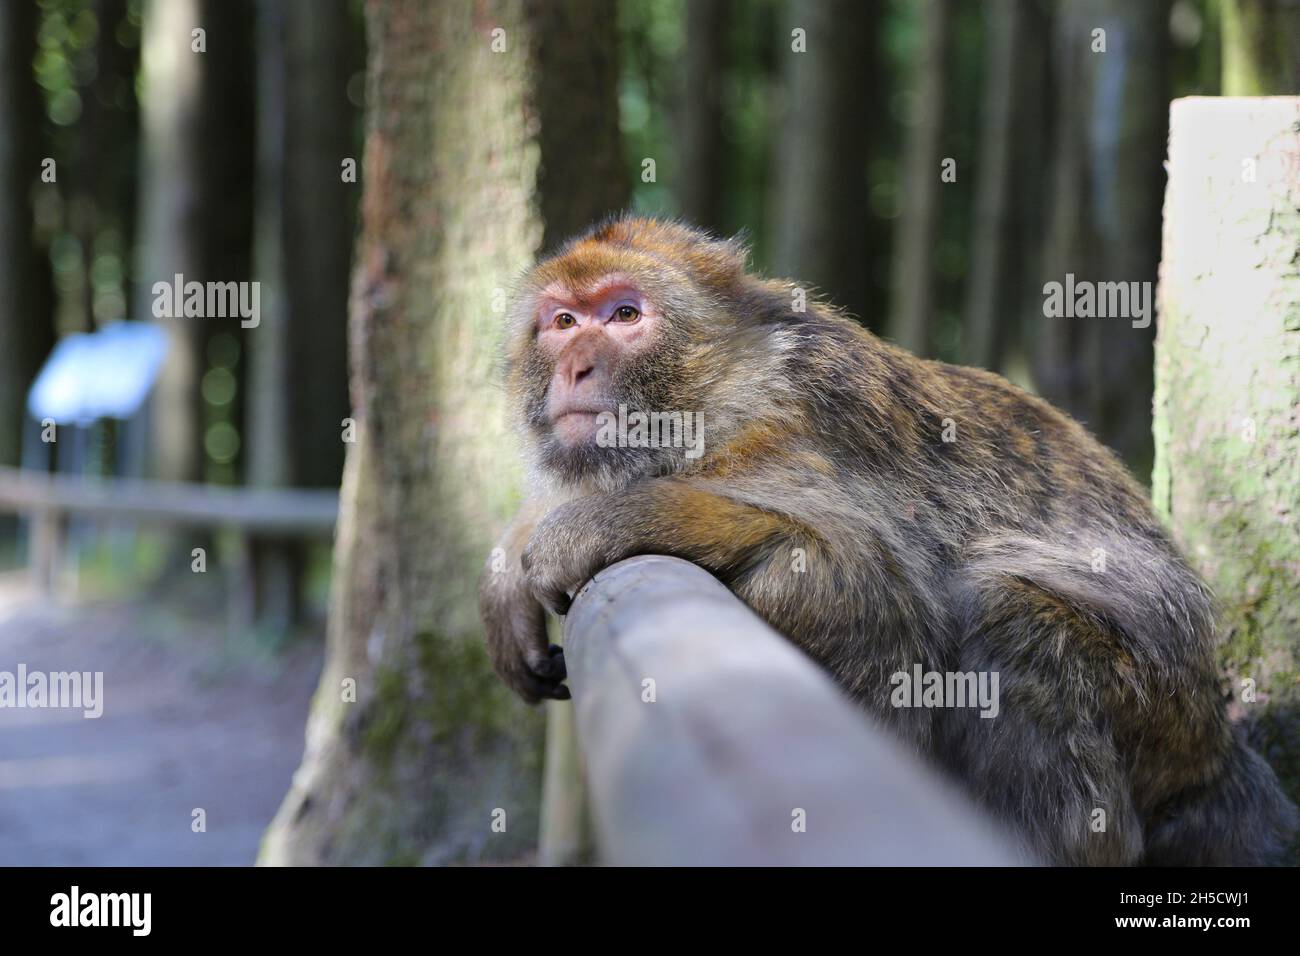 barbary ape, macaco di barbary (Macaca sylvanus), appoggiato contro una recinzione di legno, Germania Foto Stock